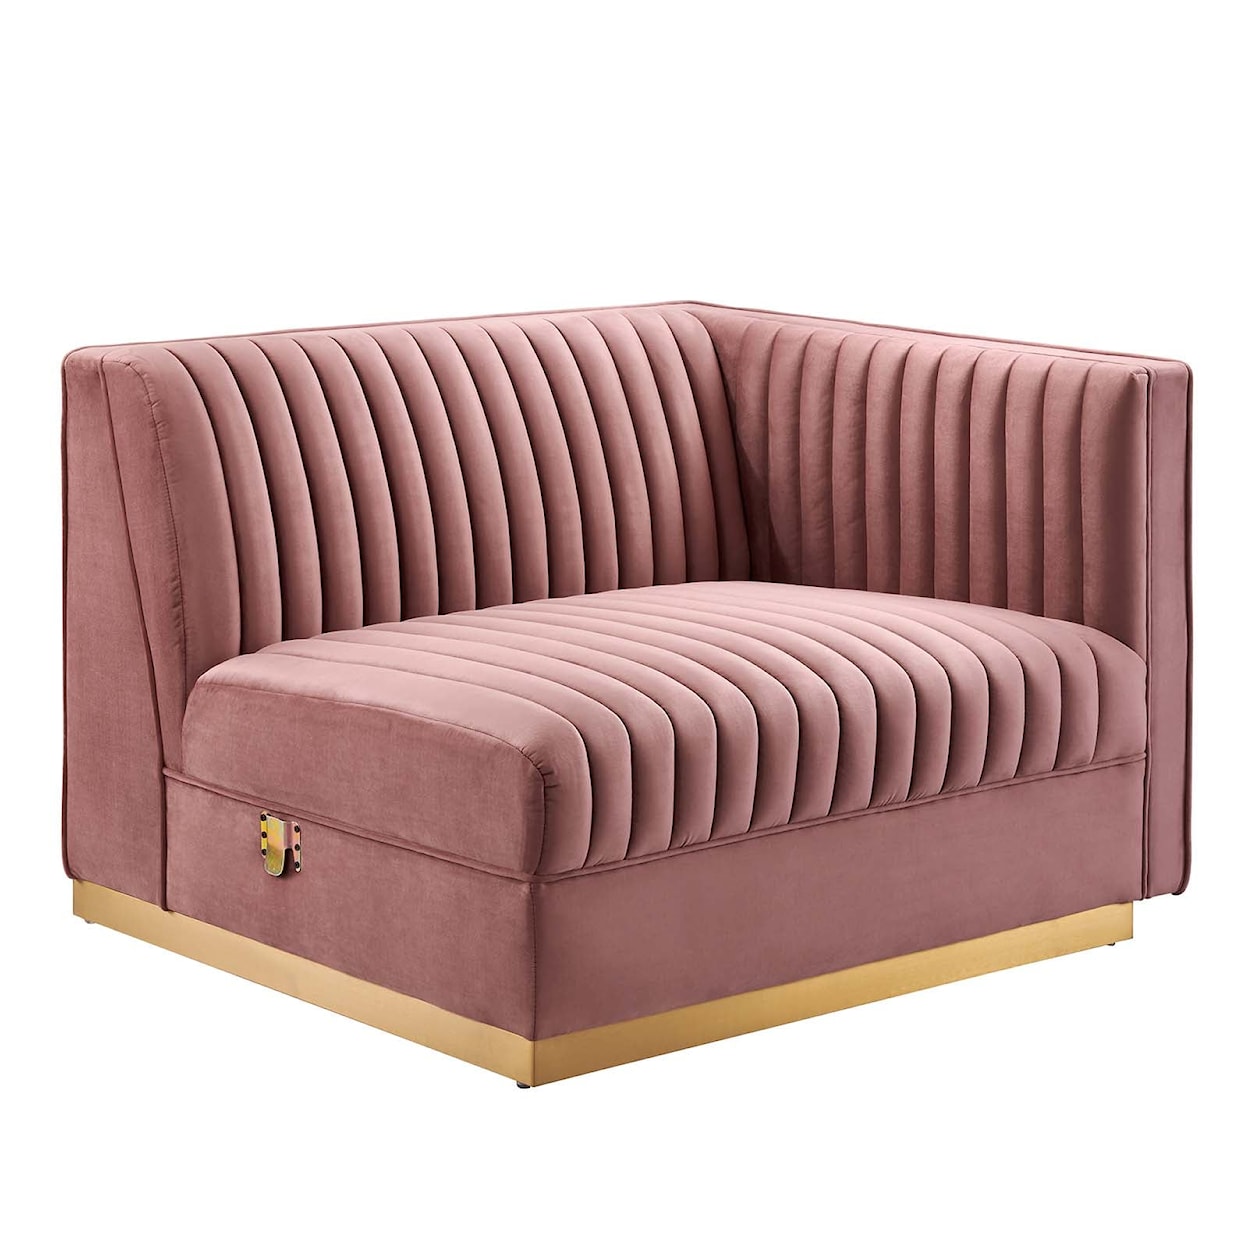 Modway Sanguine 4-Piece Right-Facing Modular Sectional Sofa